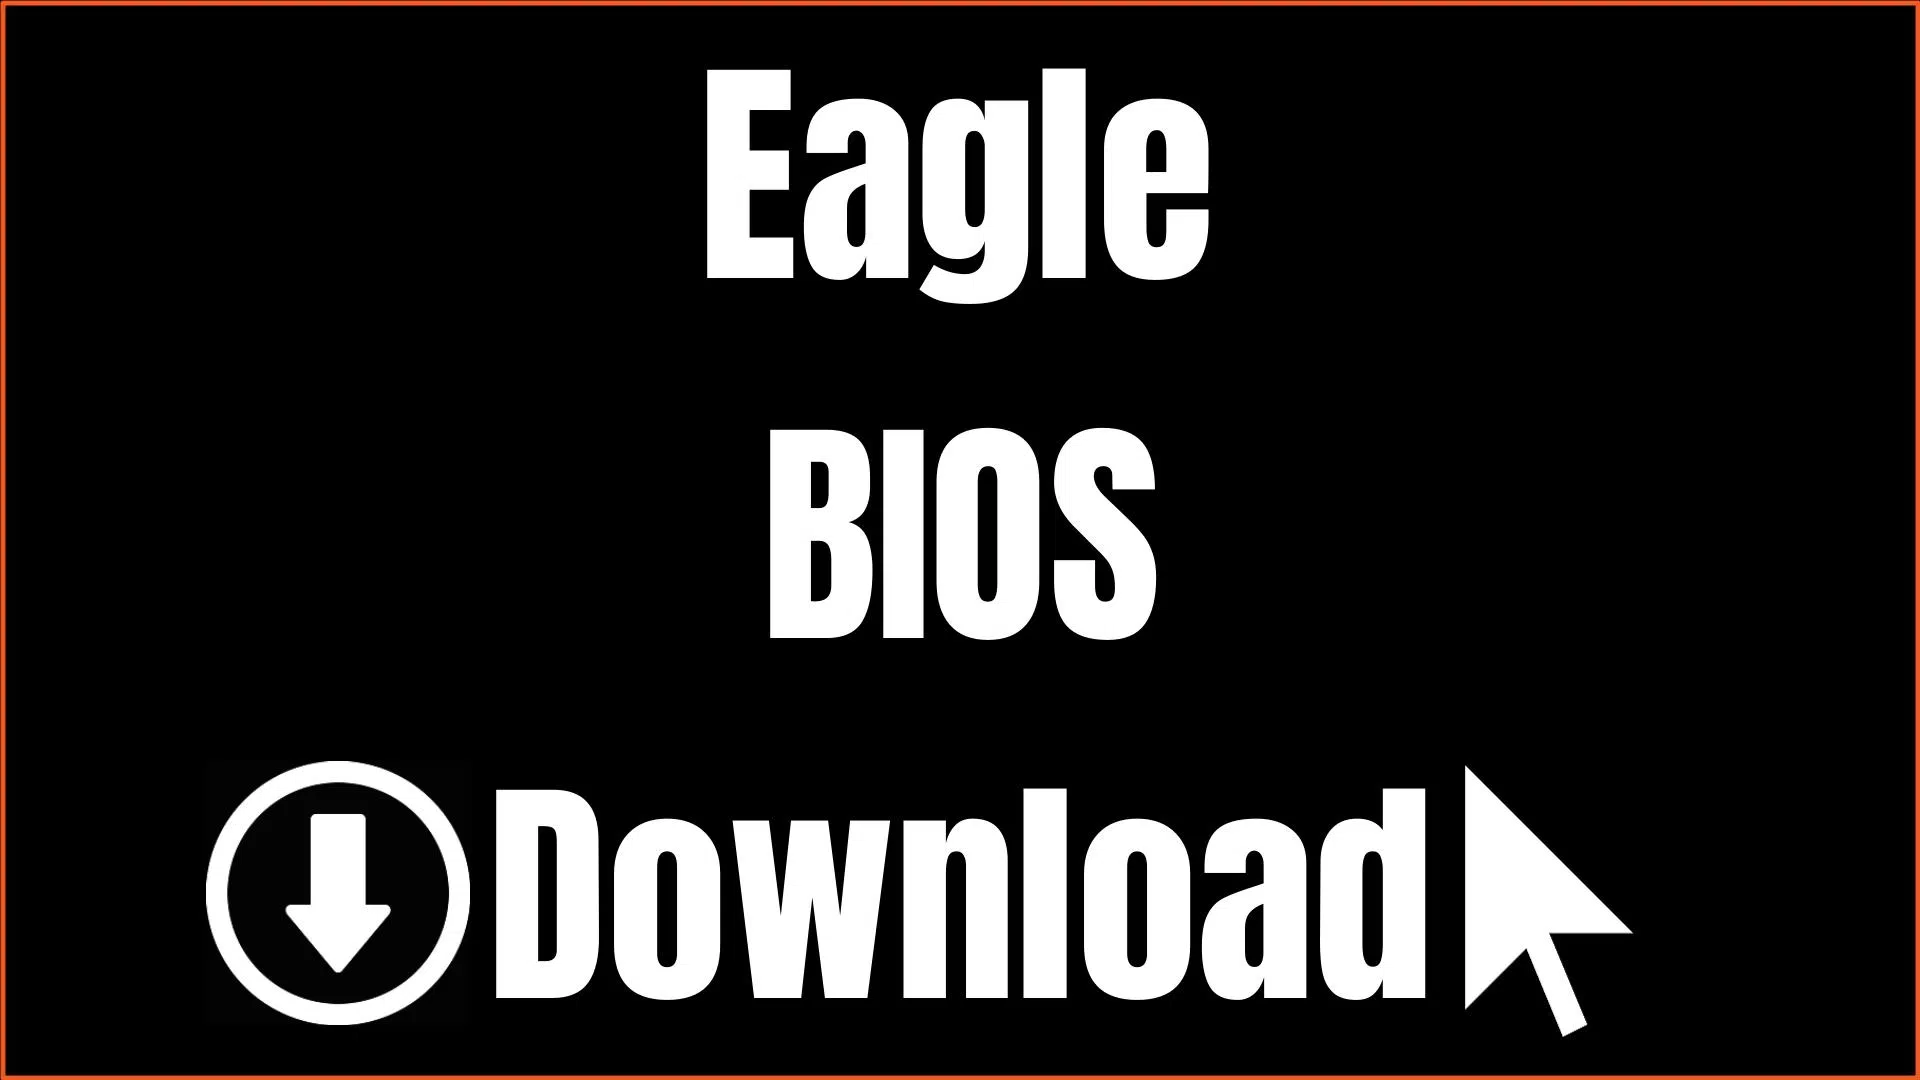 Eagle BIOS Download